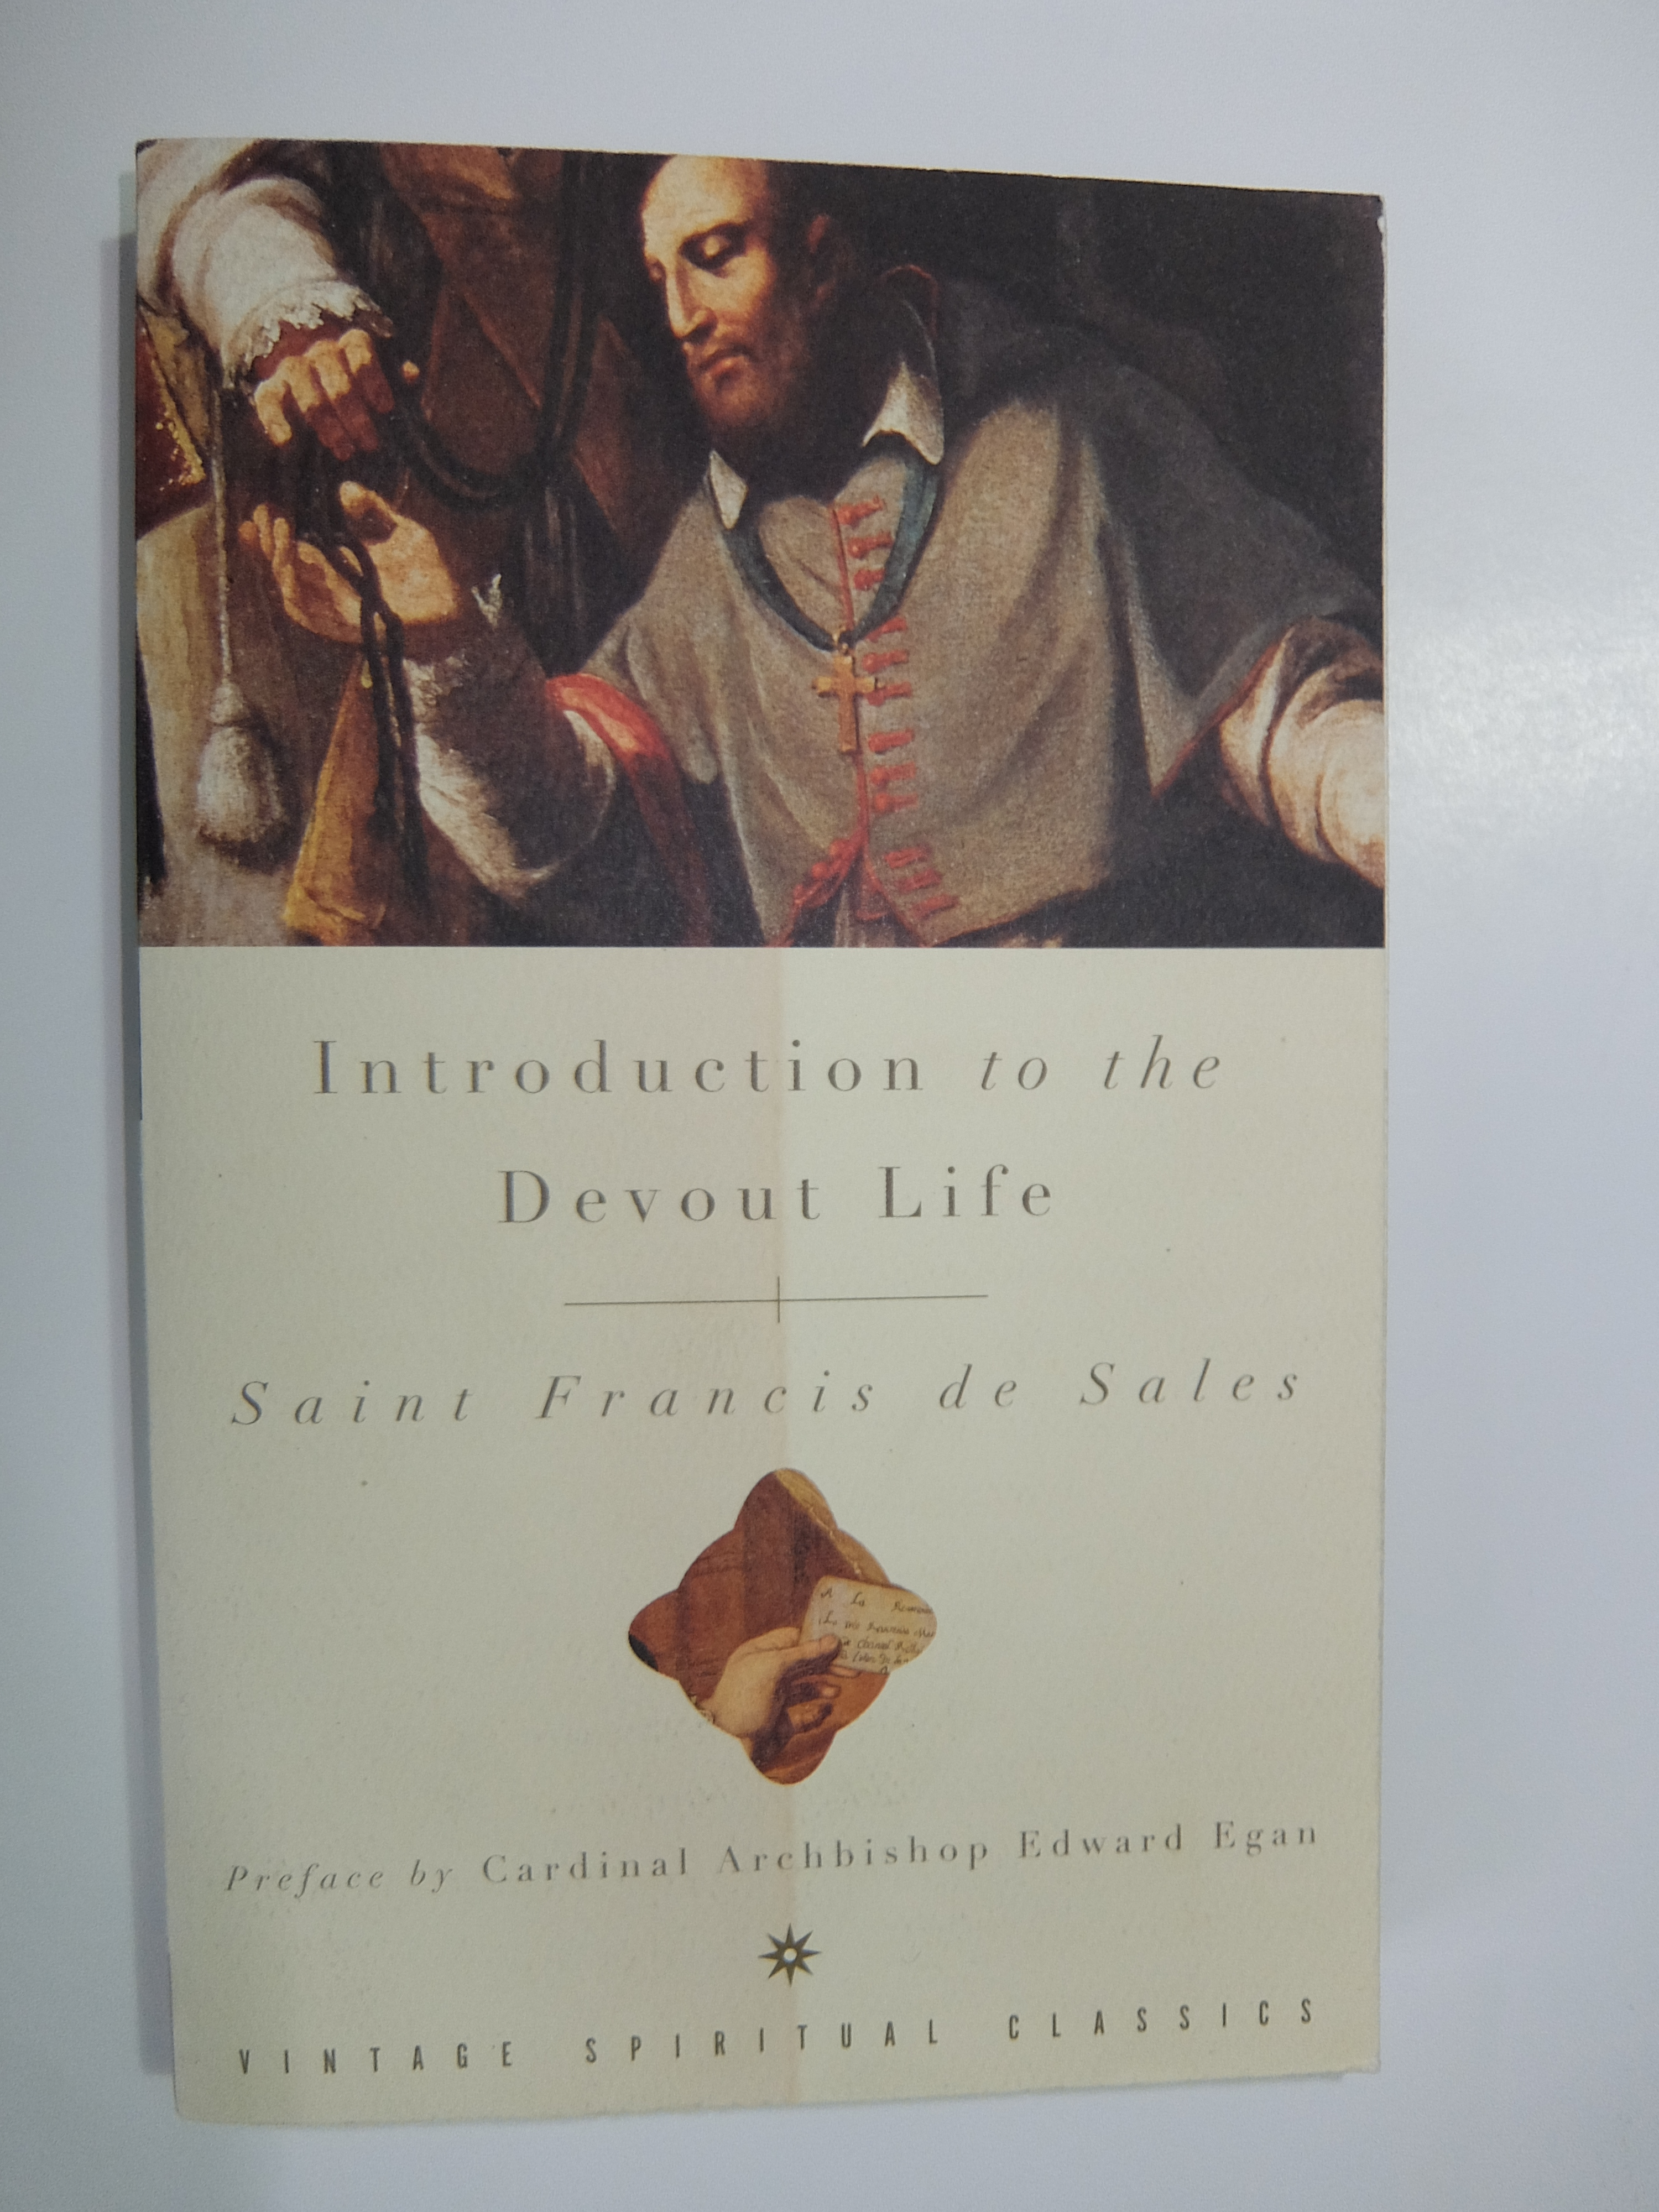 Introduction to the Devout Life - St Francis de Sales Image